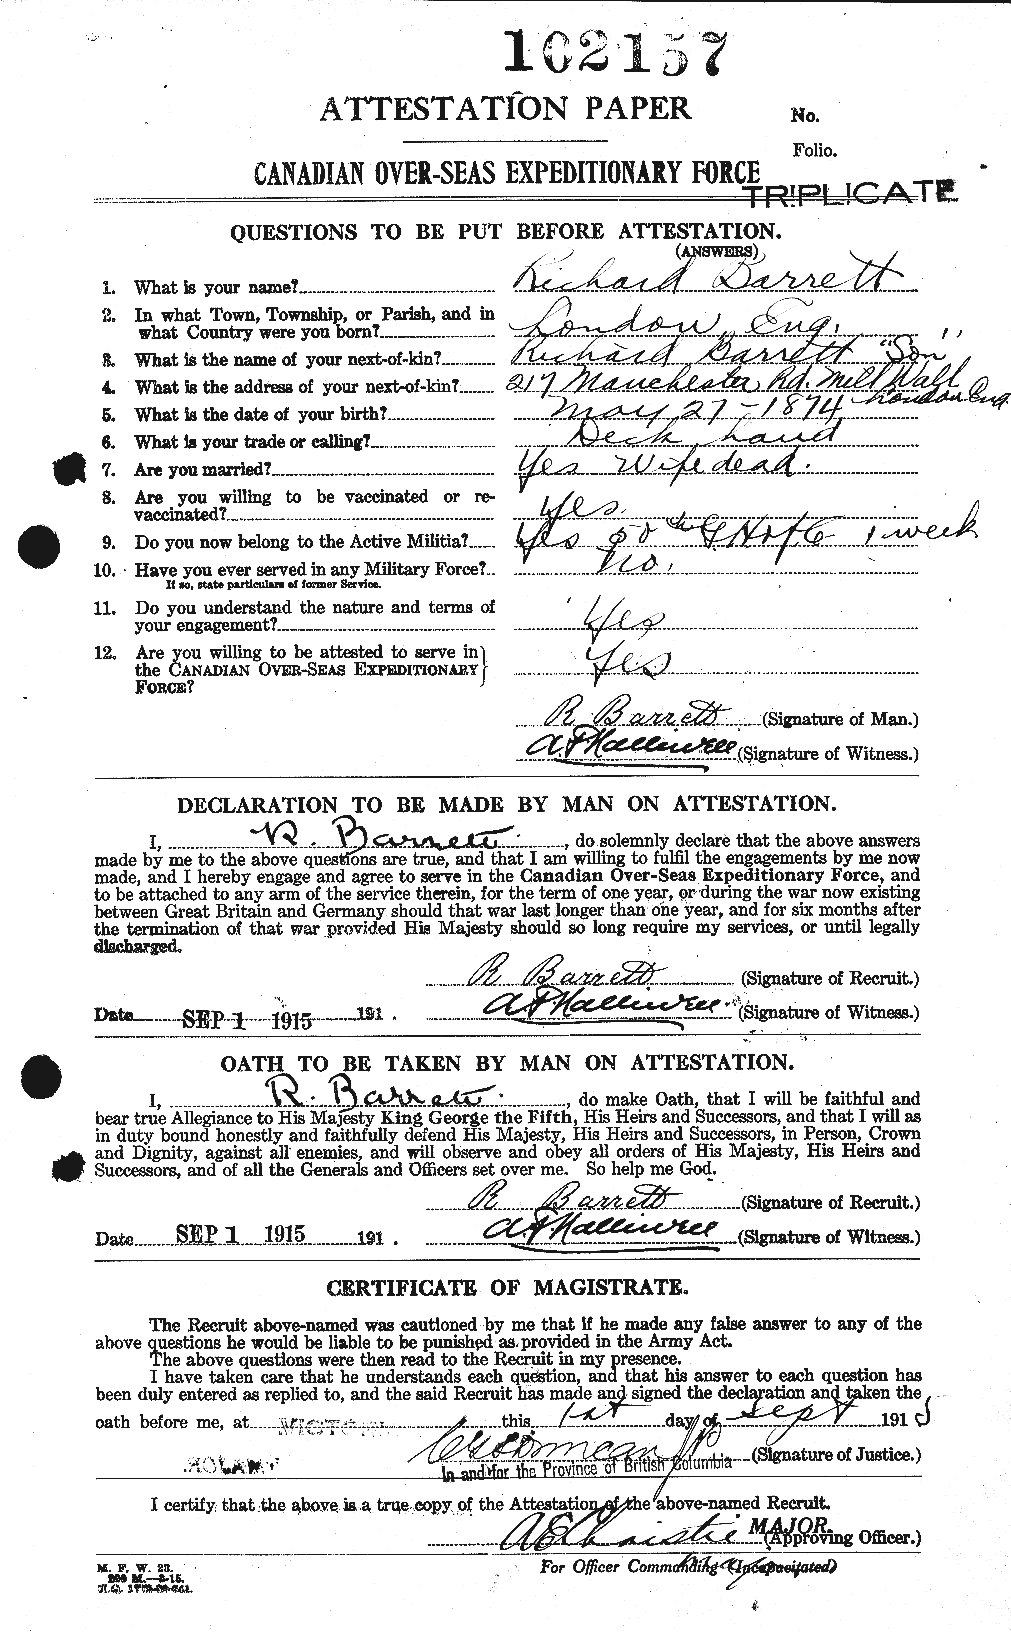 Dossiers du Personnel de la Première Guerre mondiale - CEC 220196a